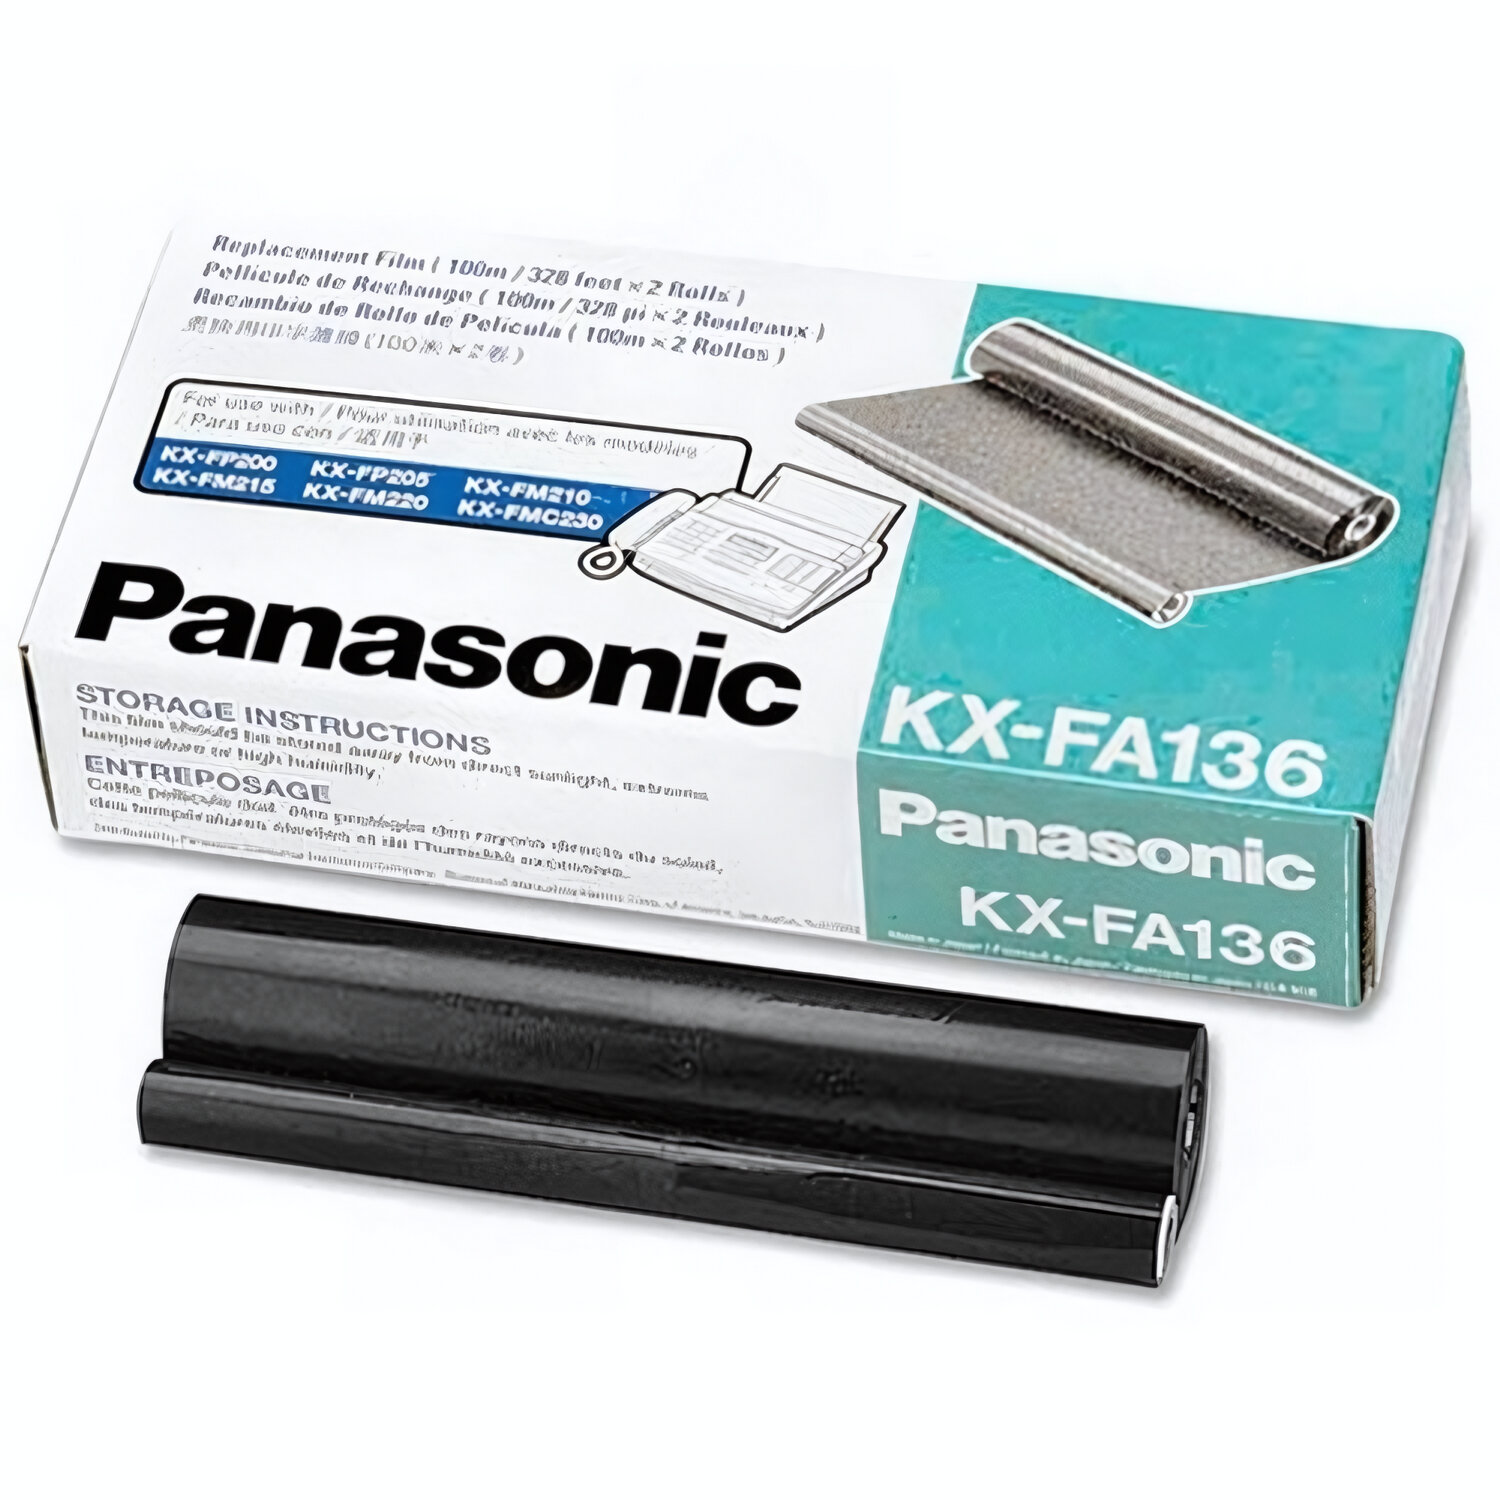 KX-FA136A/KX-FA136A7 Пленка для факса Panasonic F-1010/1110/FP105/FM131, комплект из 2 штук по 100 метров